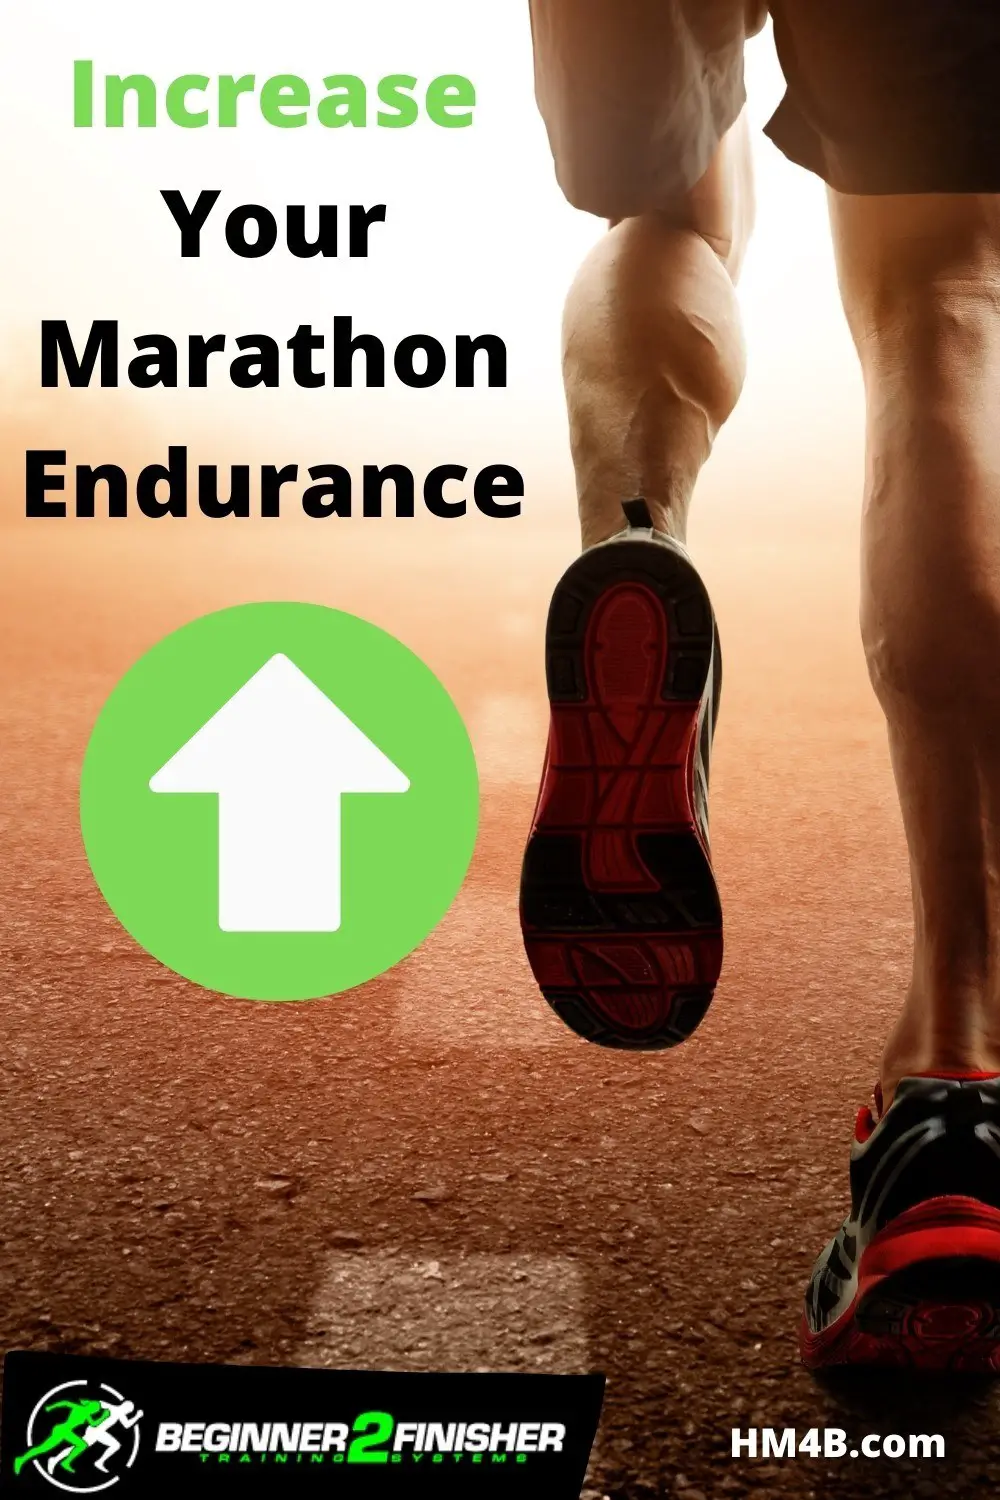 How do I Increase my Endurance for a Marathon Race?